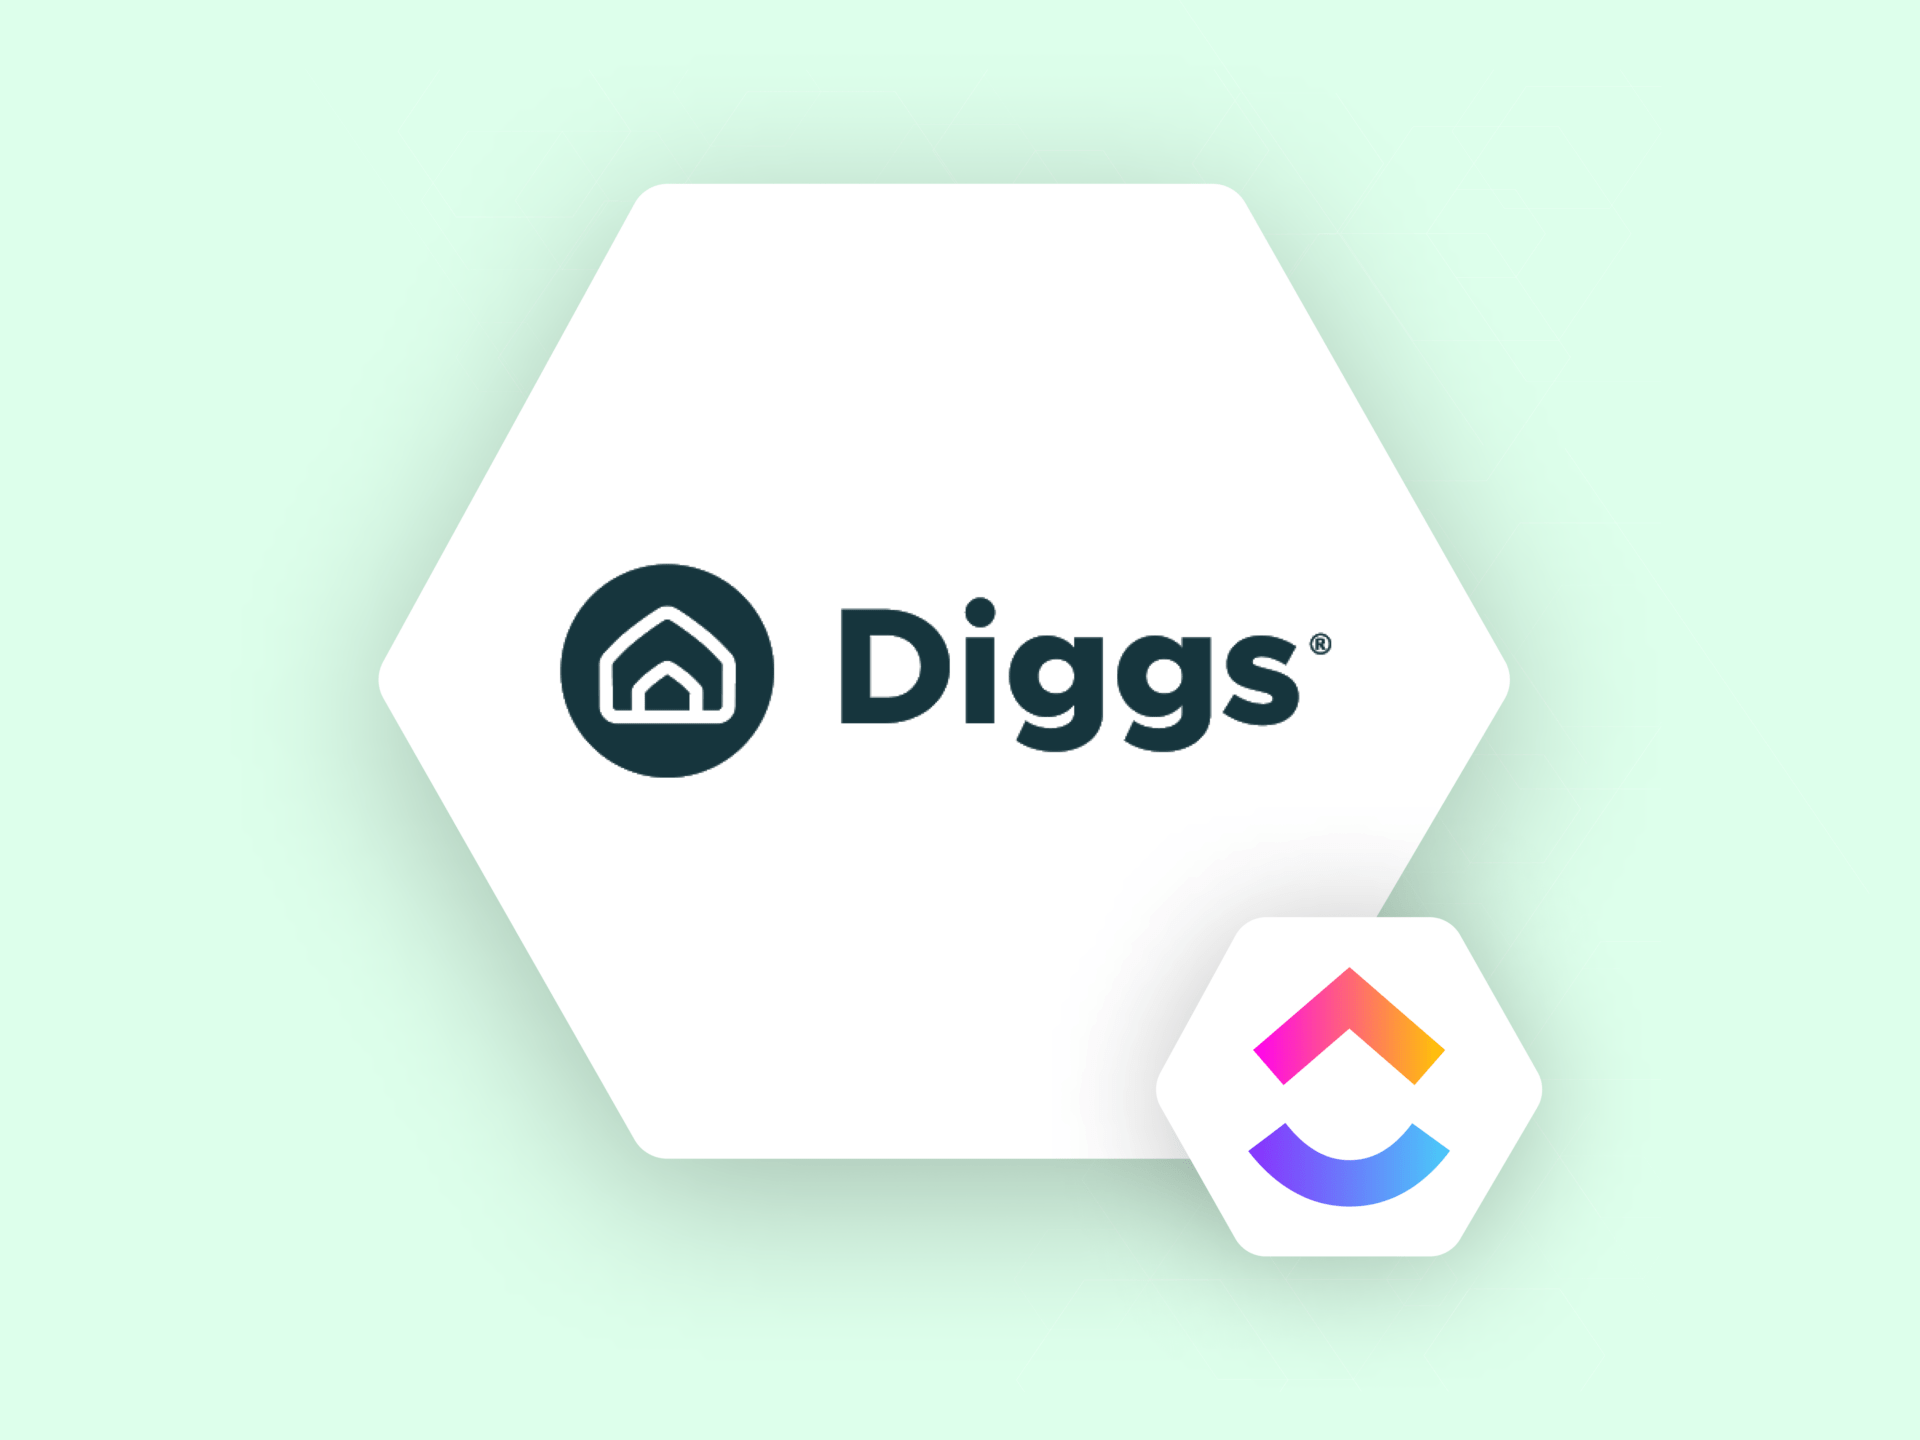 ClickUp User Spotlight Blog: Diggs